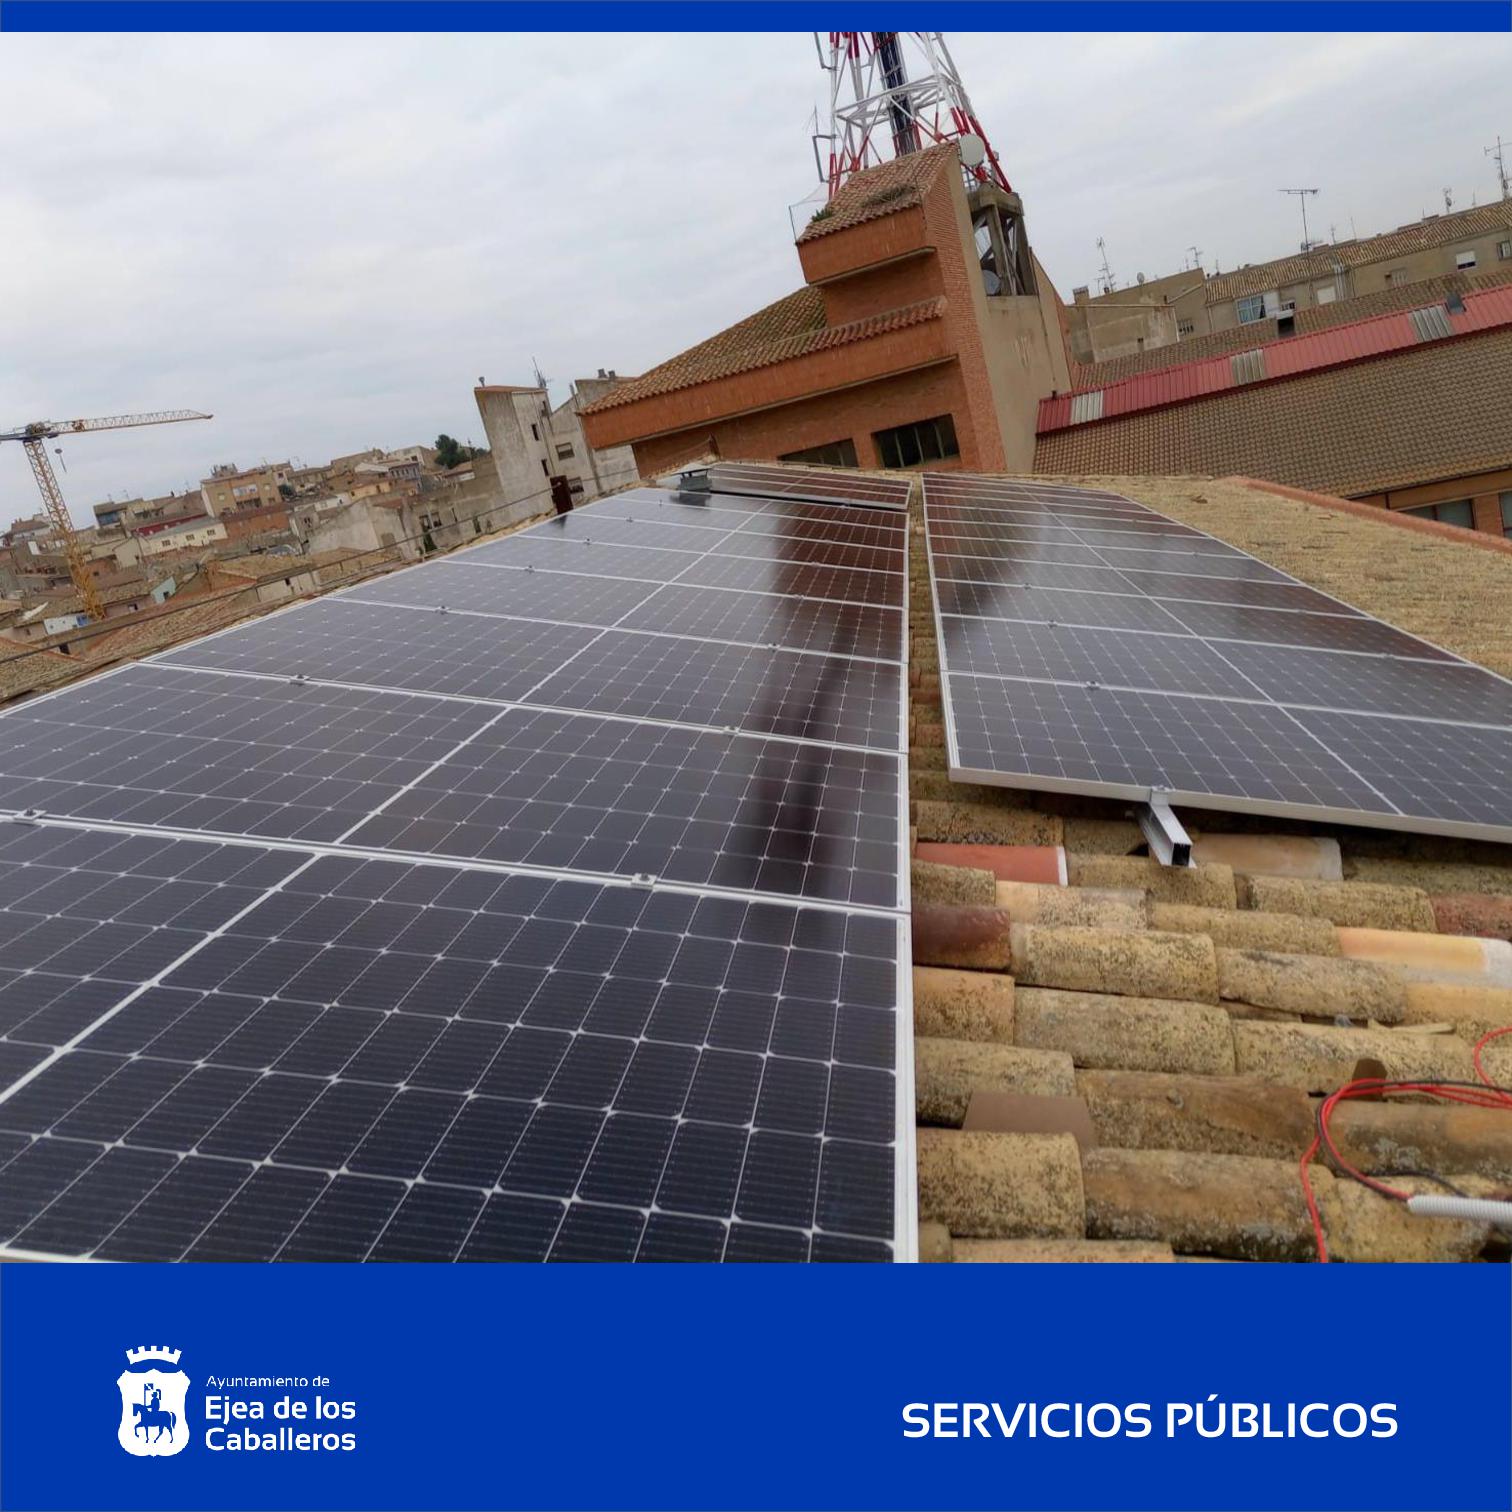 En este momento estás viendo Instalaciones solares fotovoltaicas para autoconsumo en edificios públicos de Ejea de los Caballeros